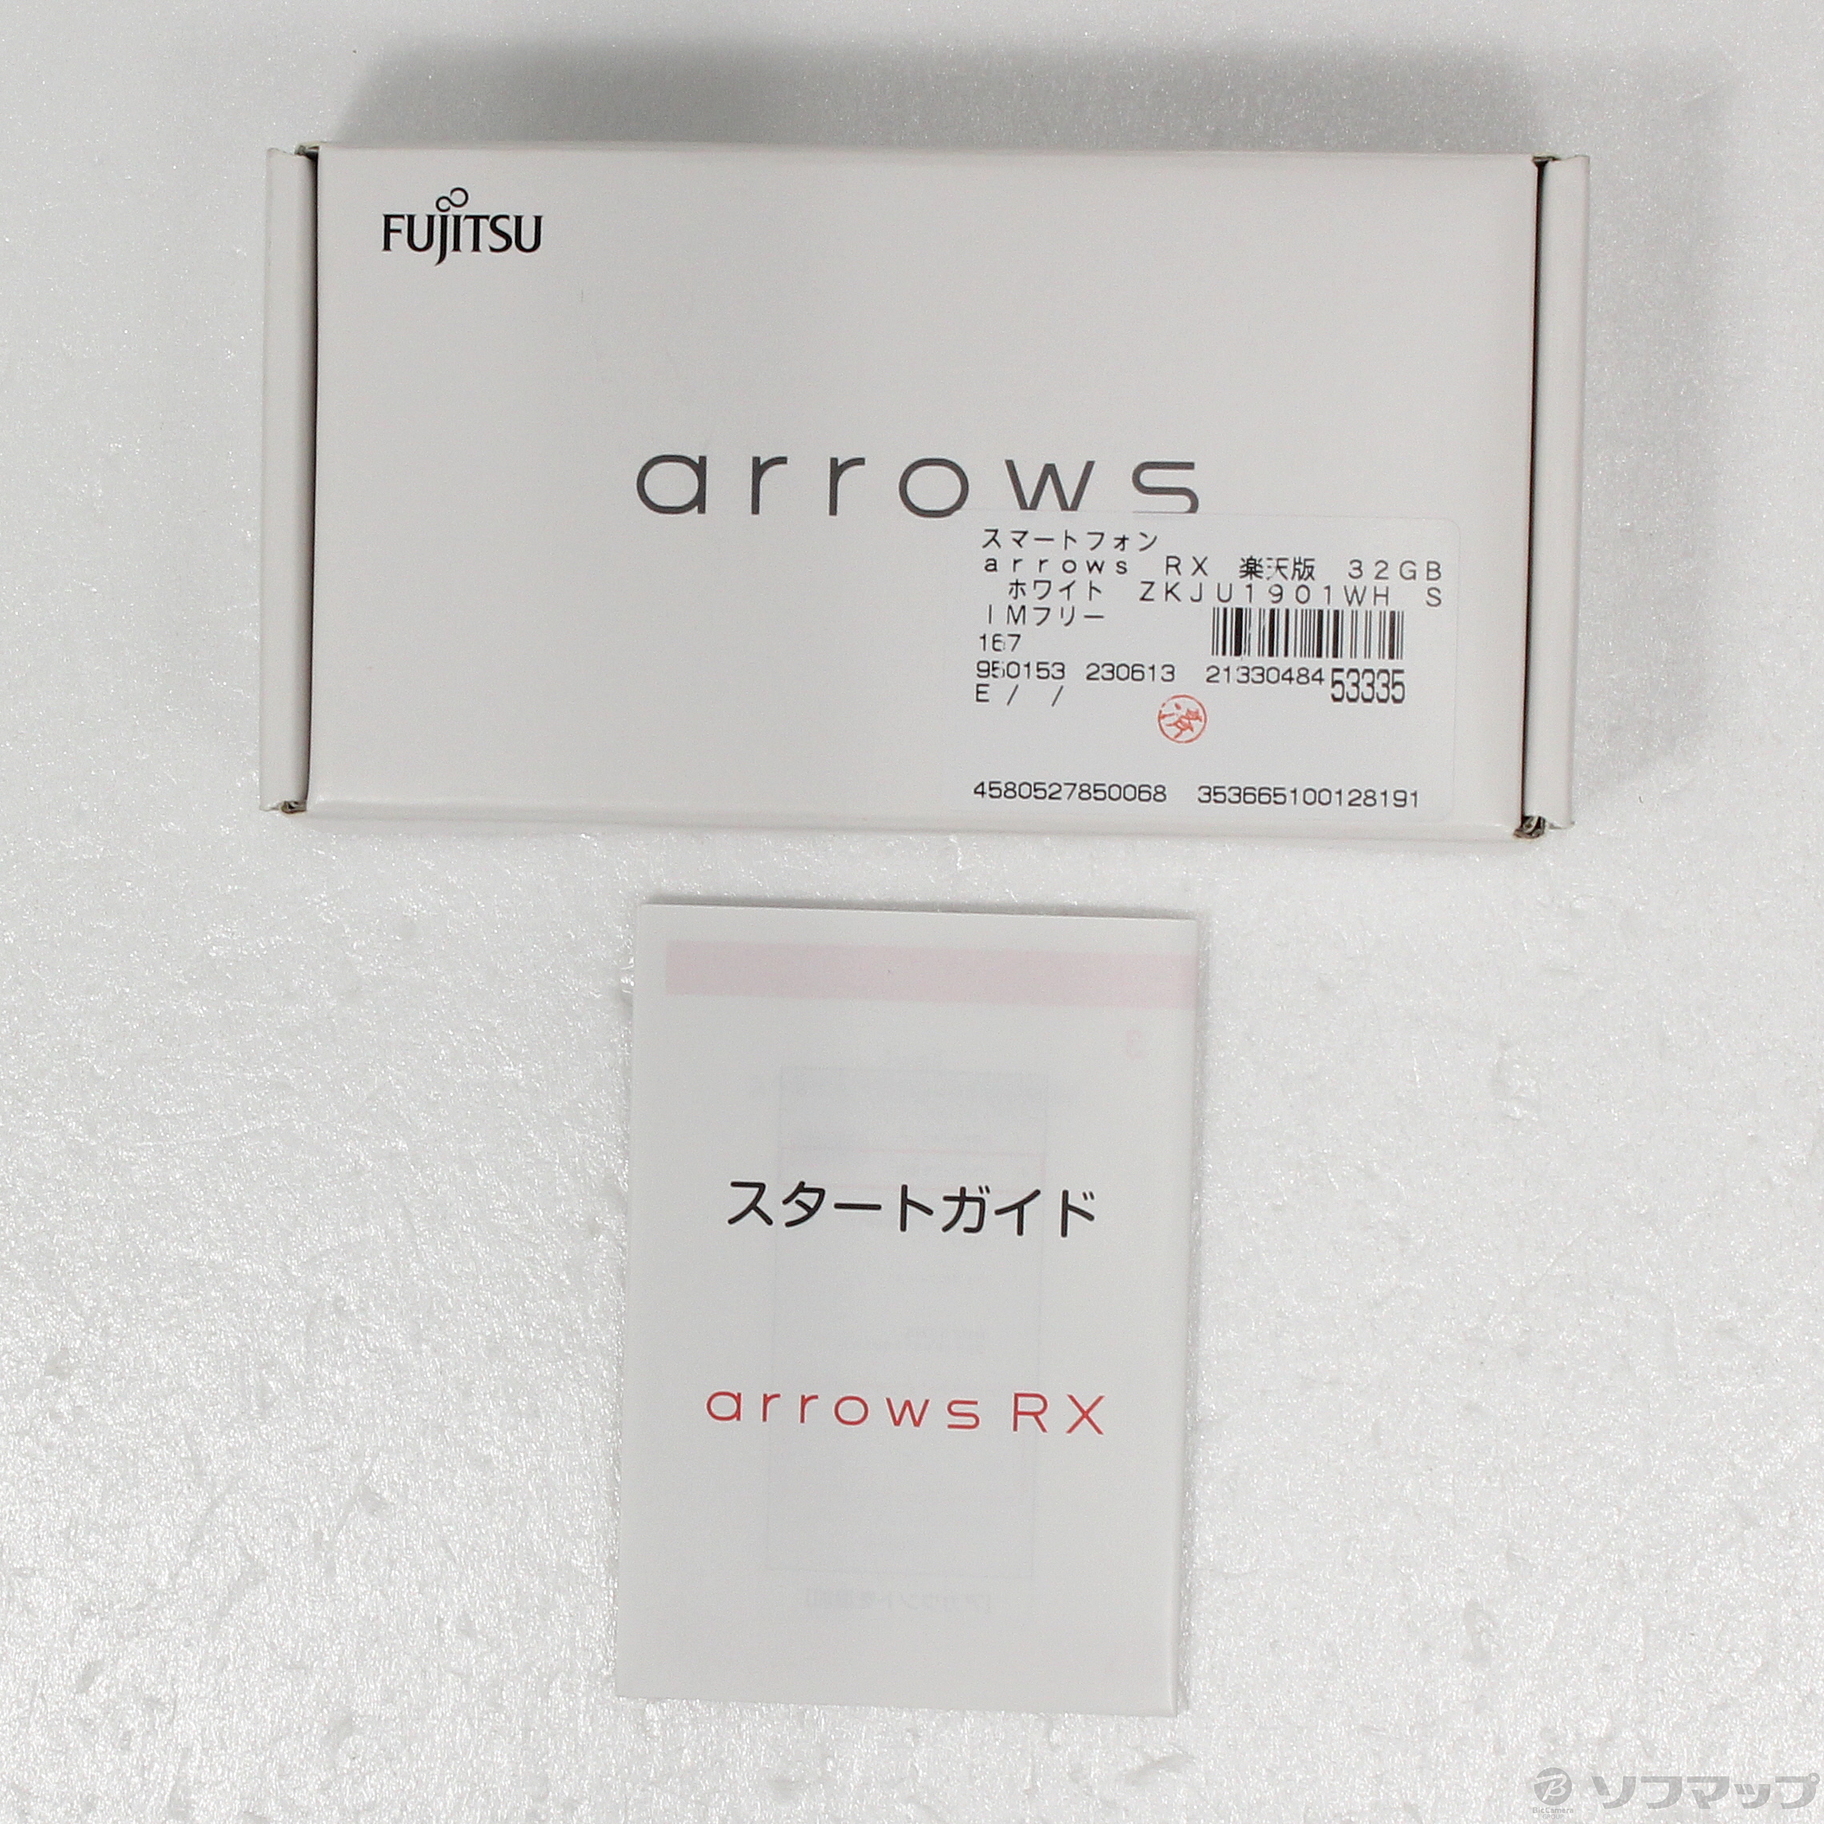 arrows RX ホワイト 32GB SIMフリー [新品]